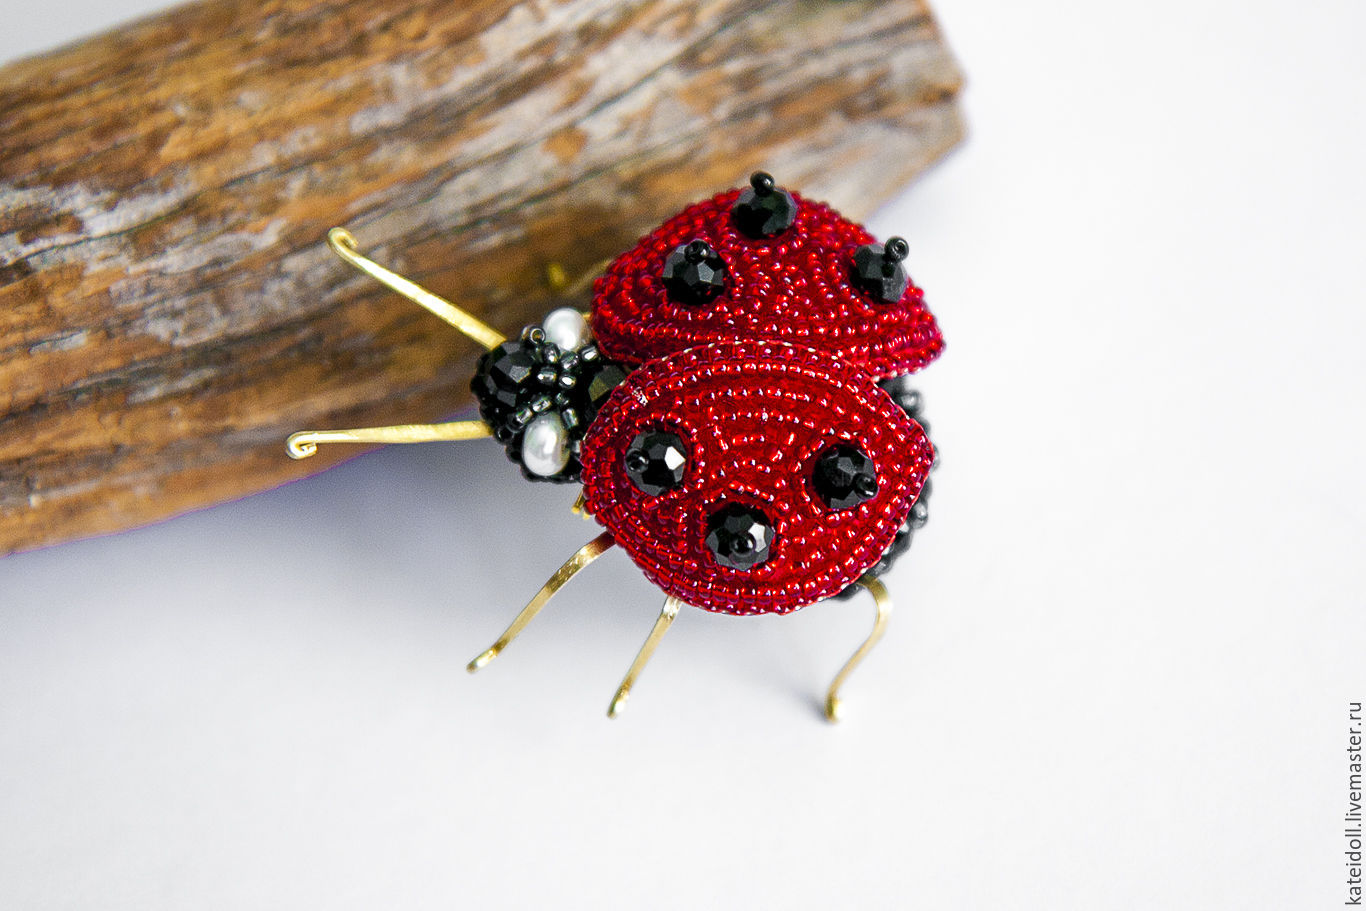 Buy Brooch Ladybug On Livemaster Online Shop 4494